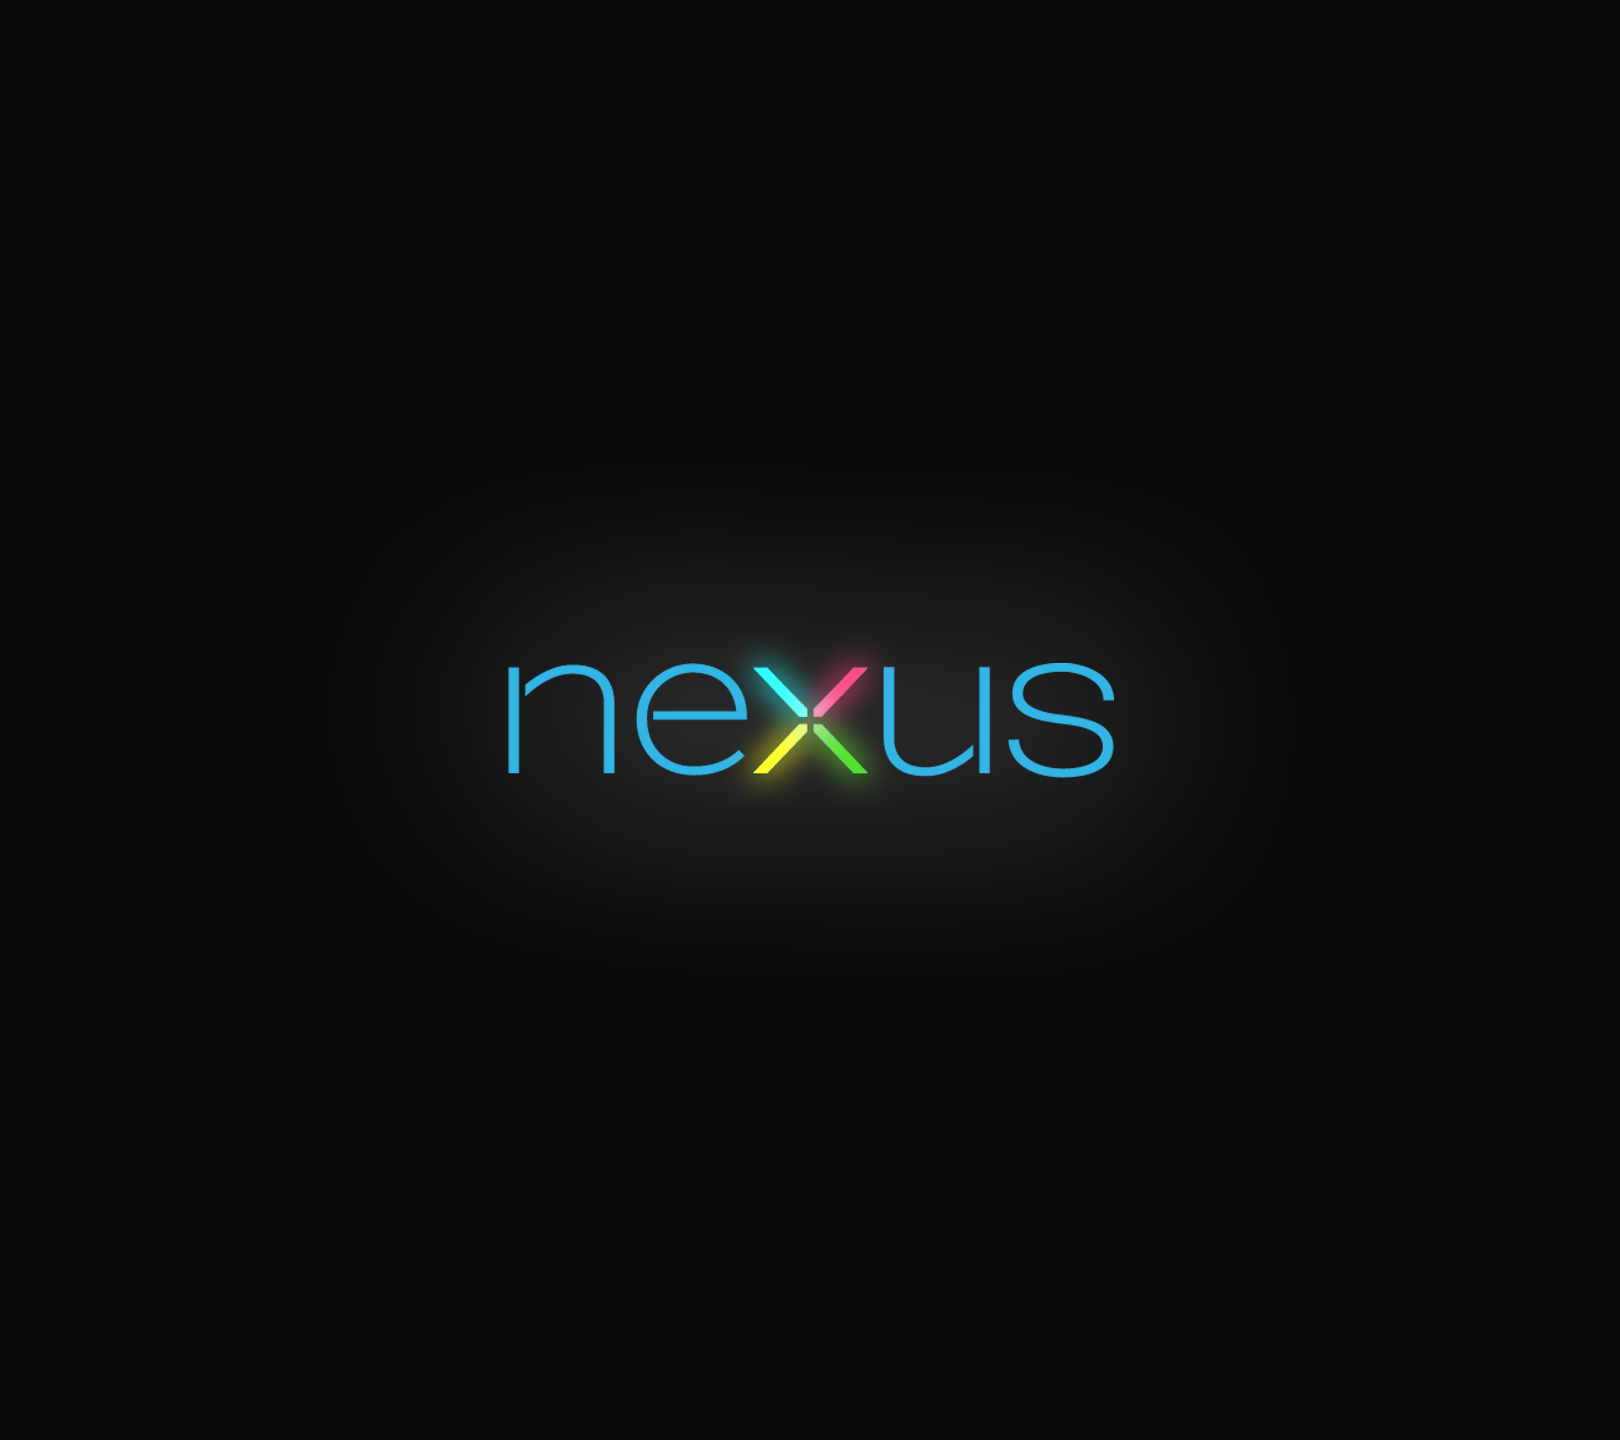 Nexus Android HD Wallpaper Desktop S